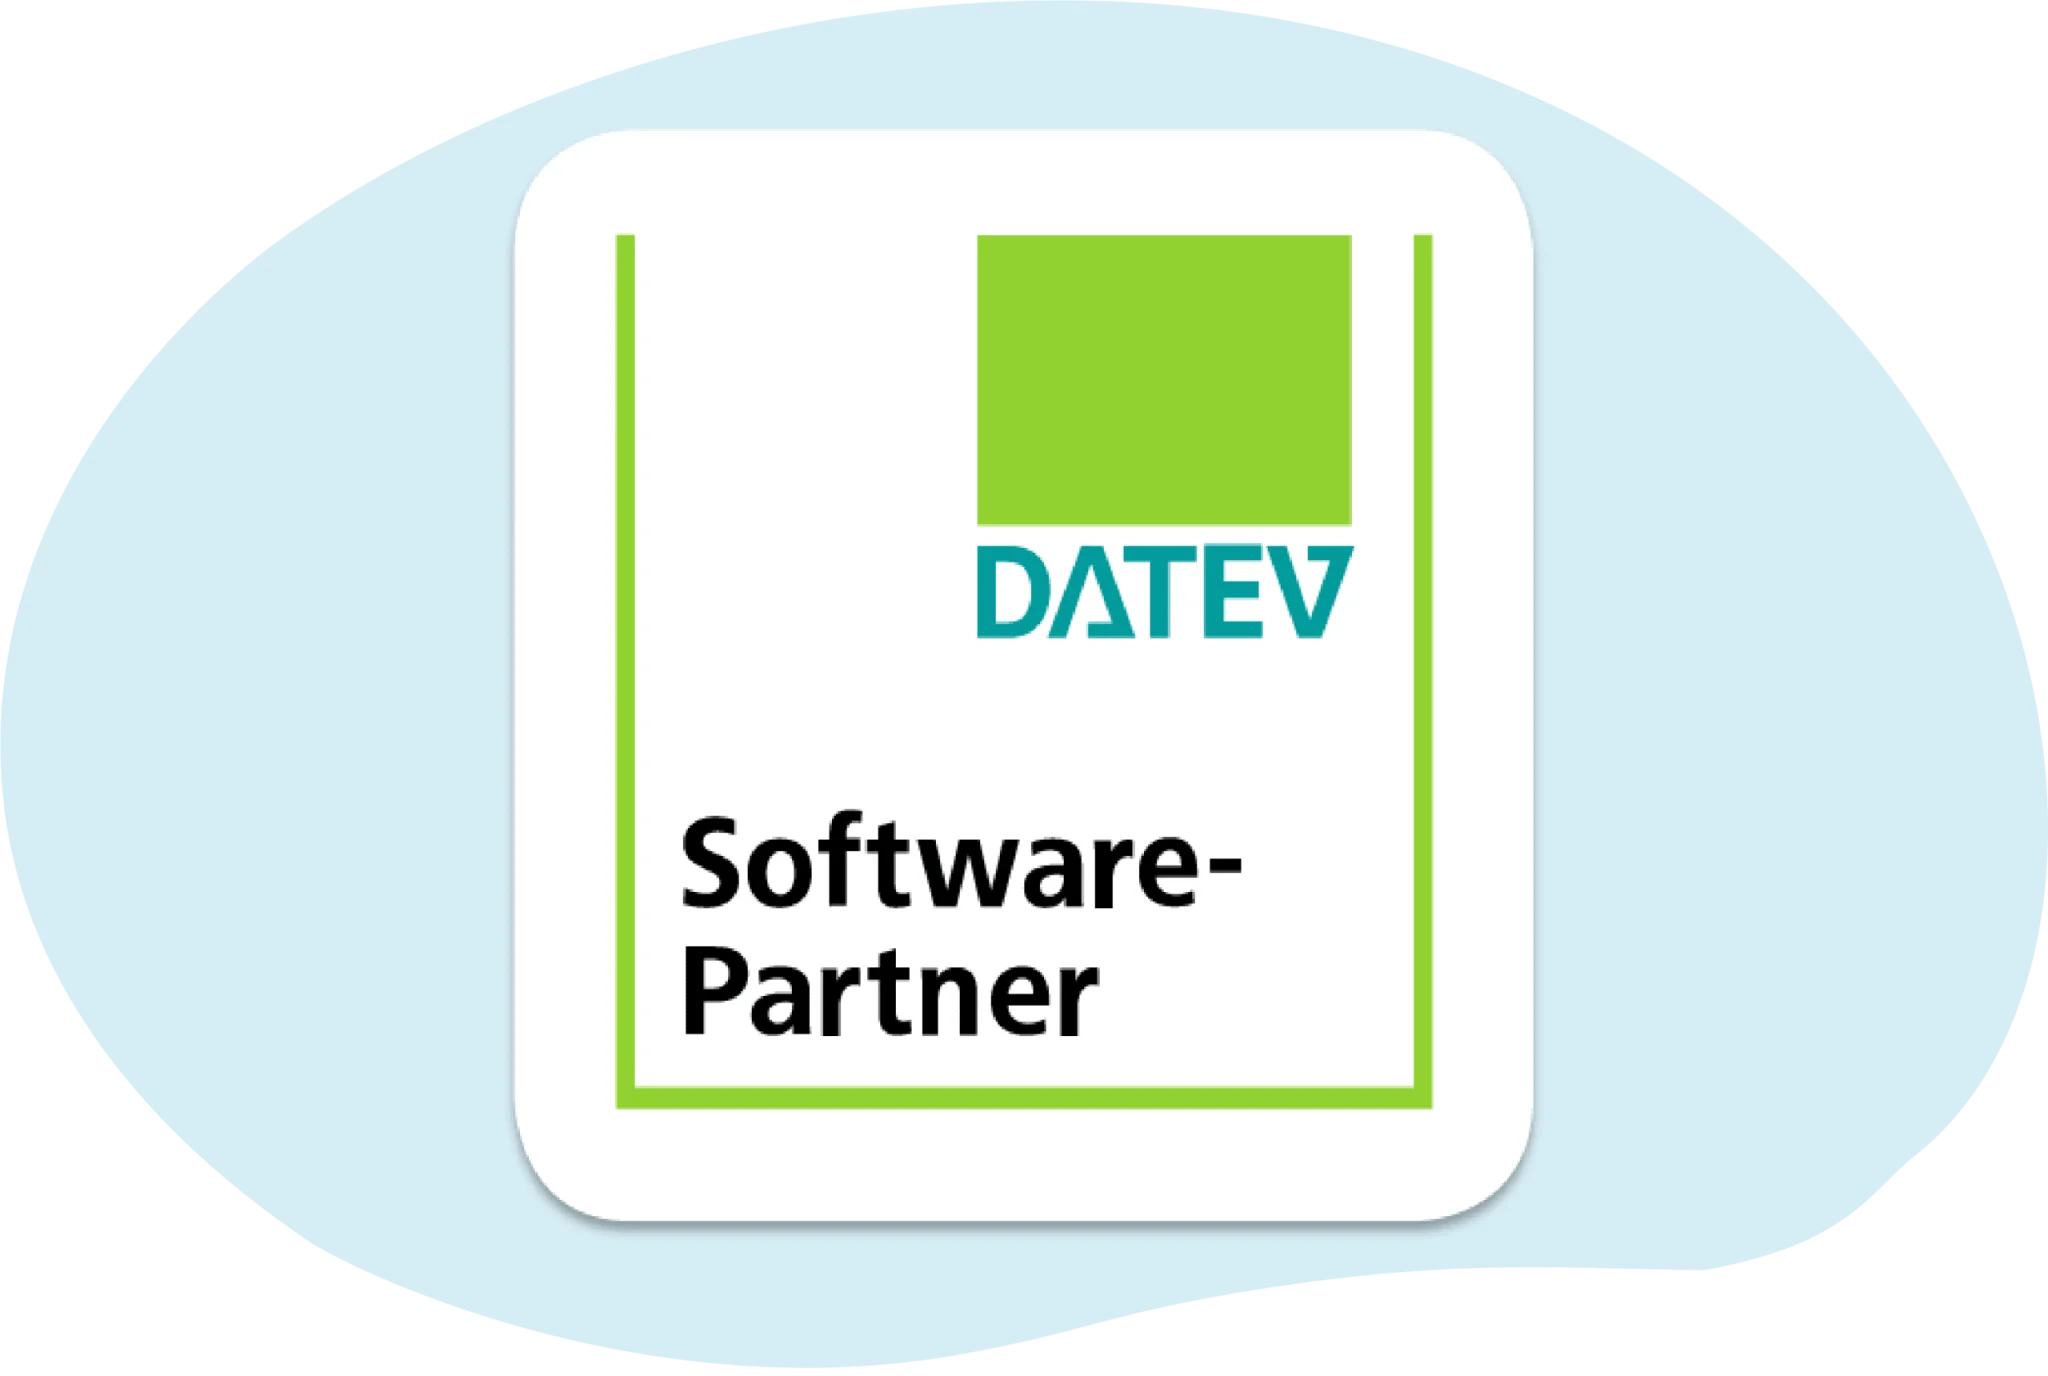 Datev Software Partner